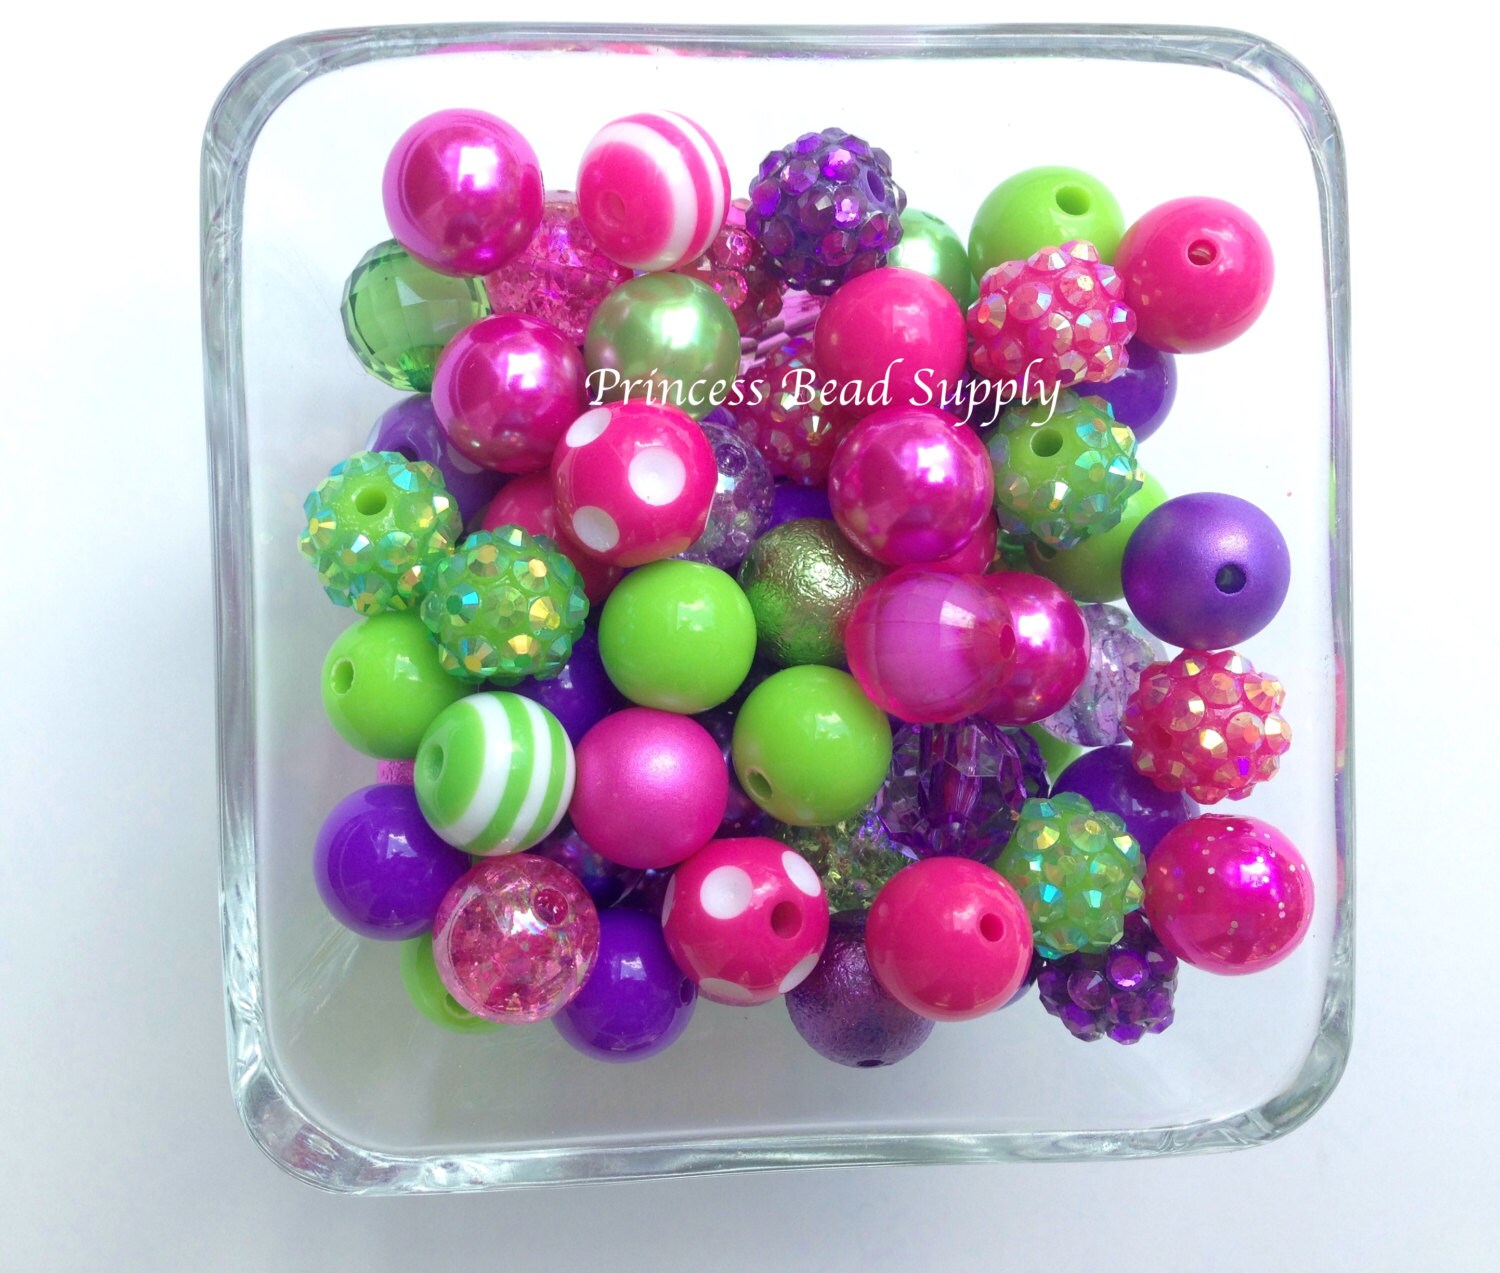 Polka Dot Glass Beads Mix Round Multi Beads for Bracelet Making Bulk 10 lbs